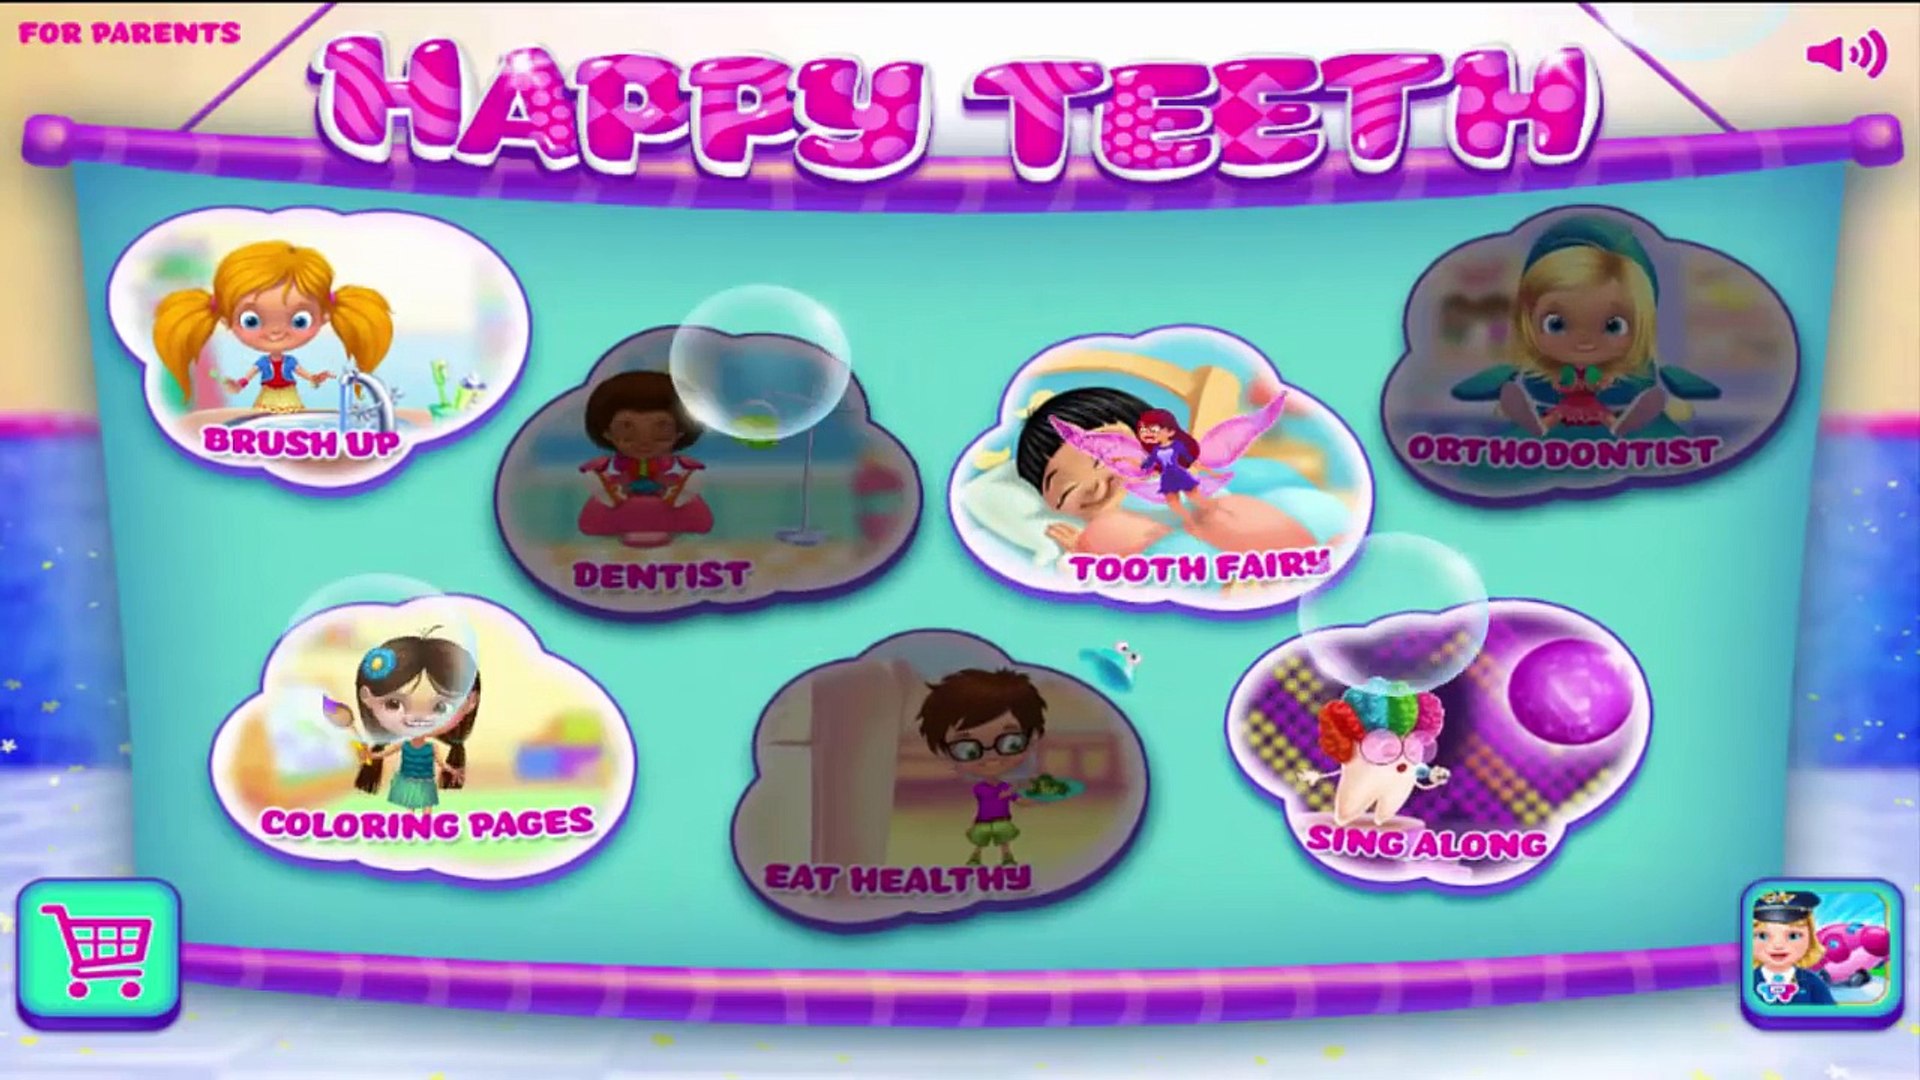 Happy Teeth Healthy Kids - Android gameplay TabTale Movie apps free kids